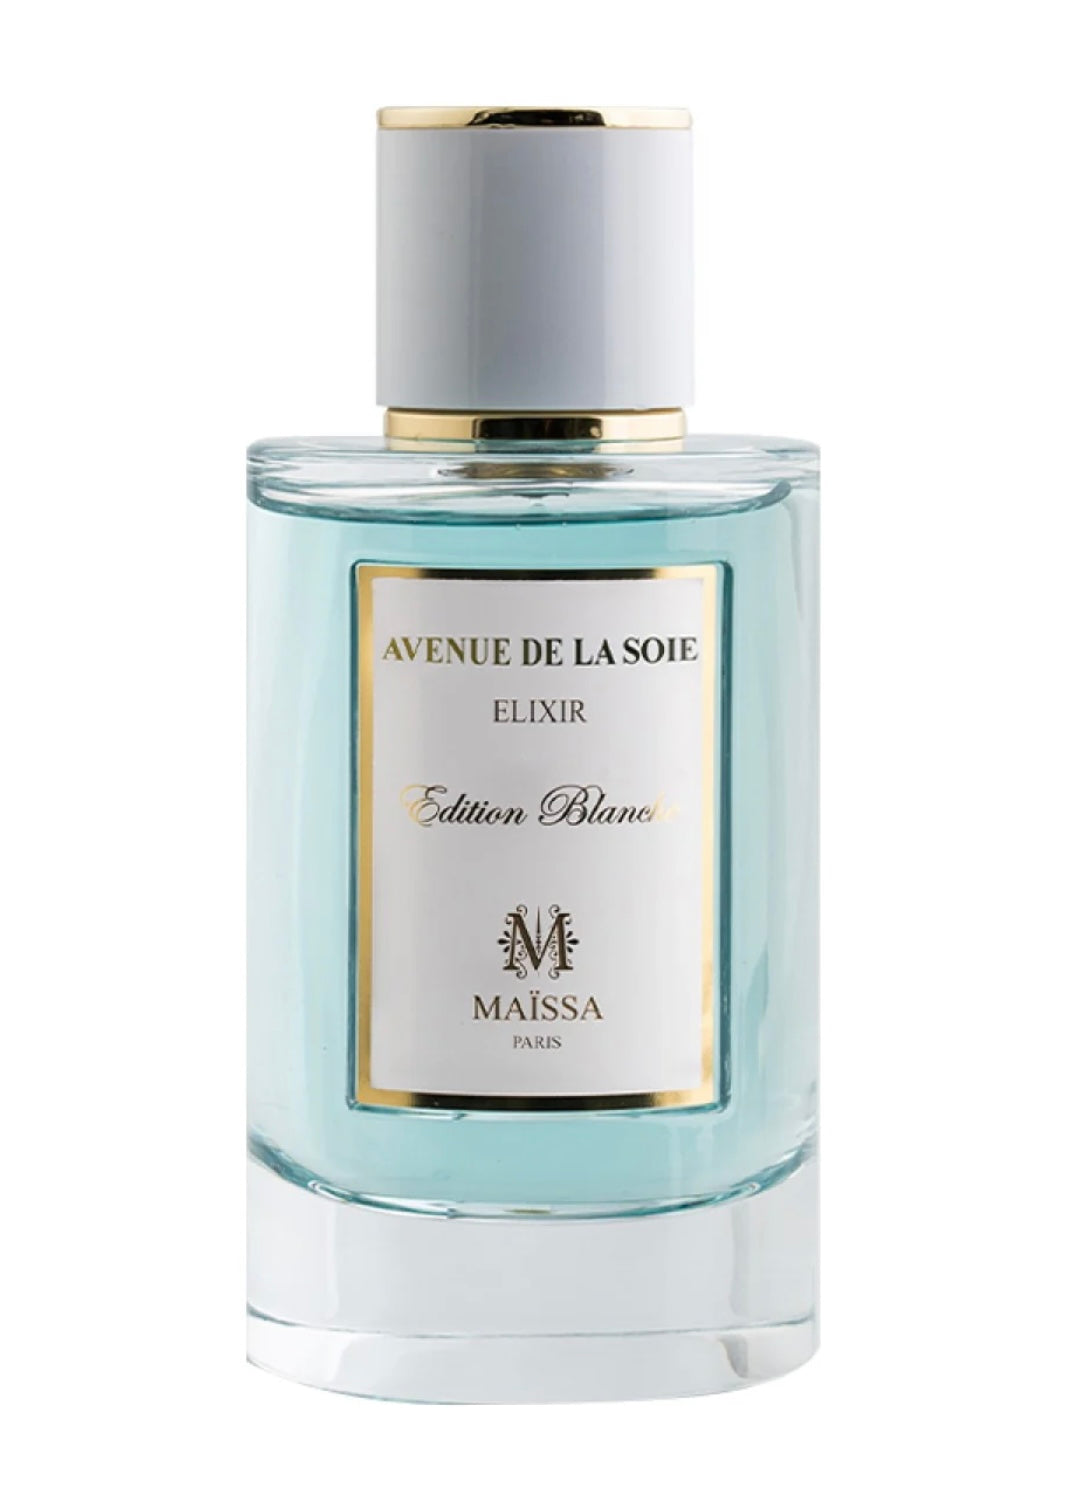 Maissa Paris Avenue de La Soie luxury fragrance